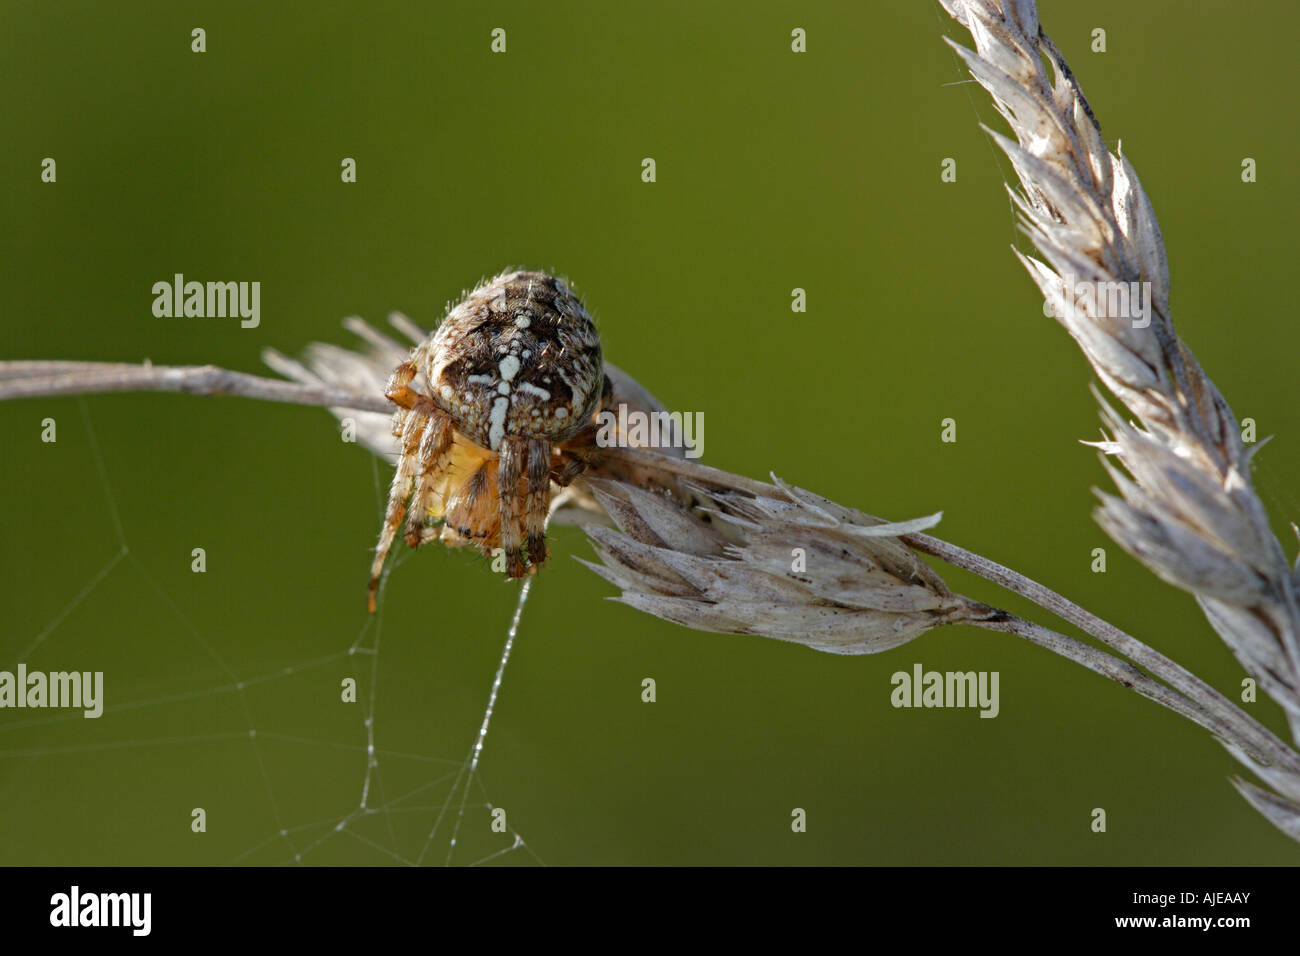 Araneus diadematus, l'araignée des jardins, tenant à son site web Banque D'Images